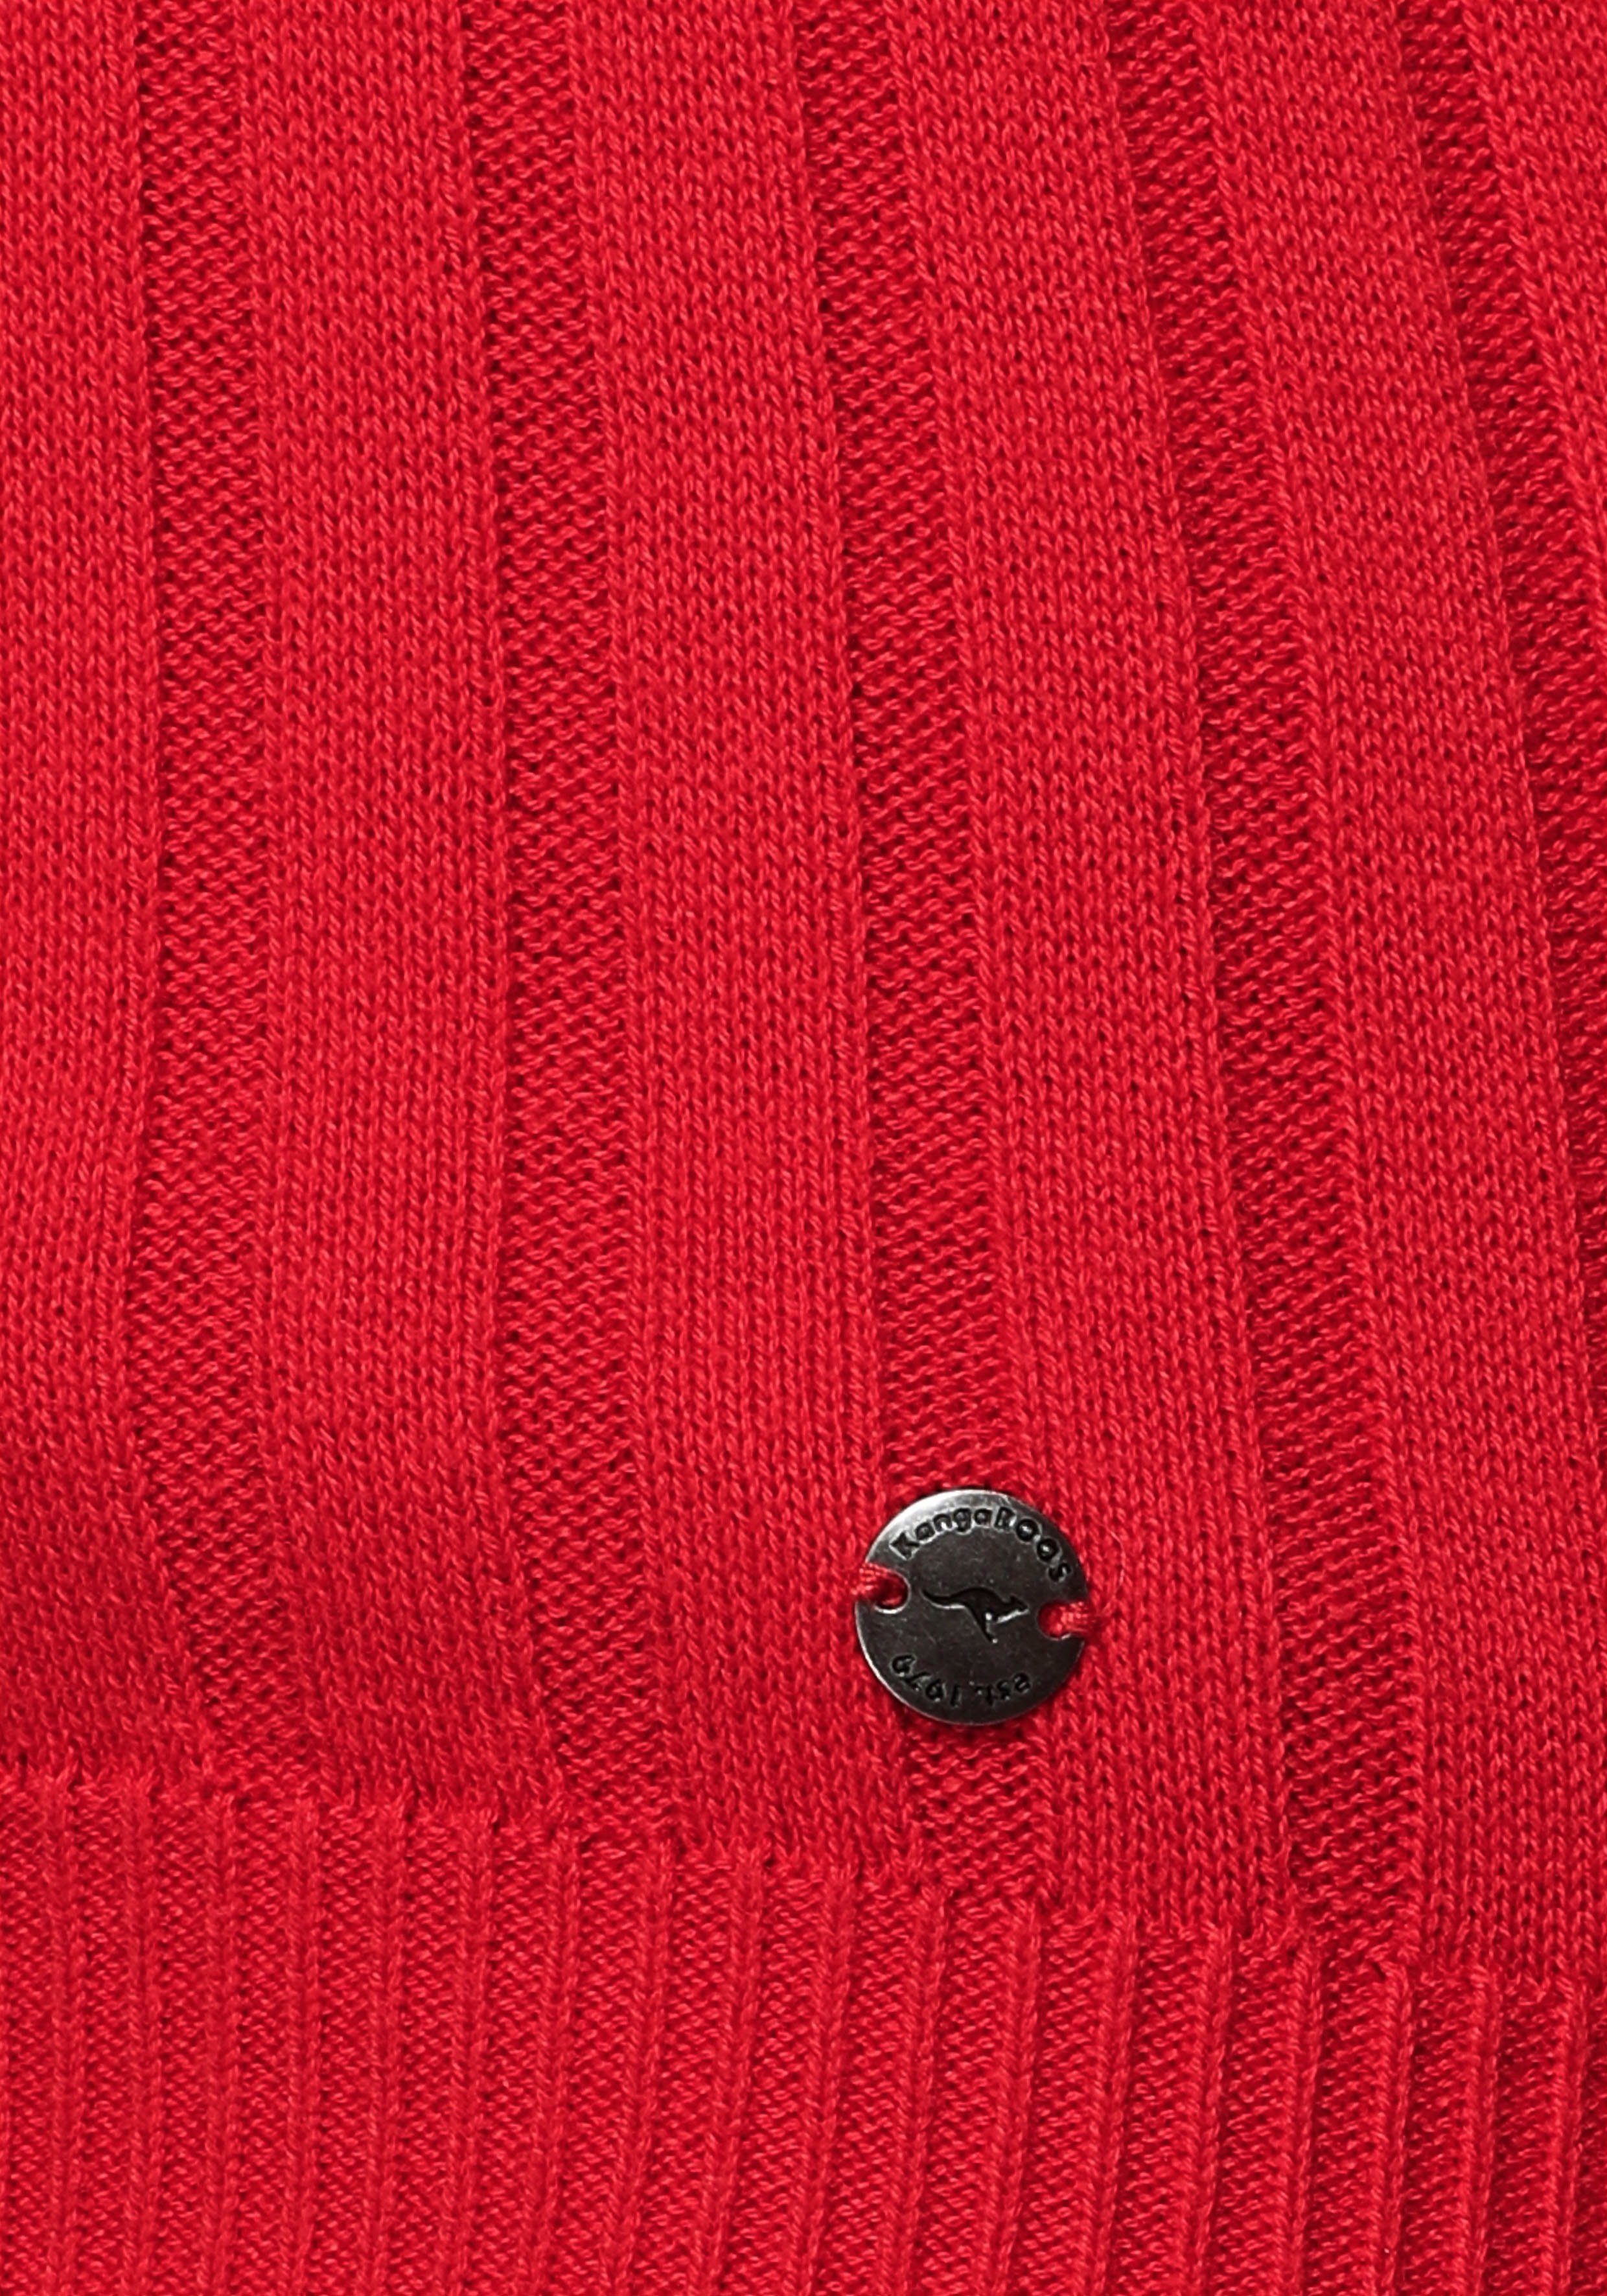 Damen Pullover KangaROOS Strickpullover mit kontrastfarbener Kapuzeninnenseite und Logodruck auf dem Arm